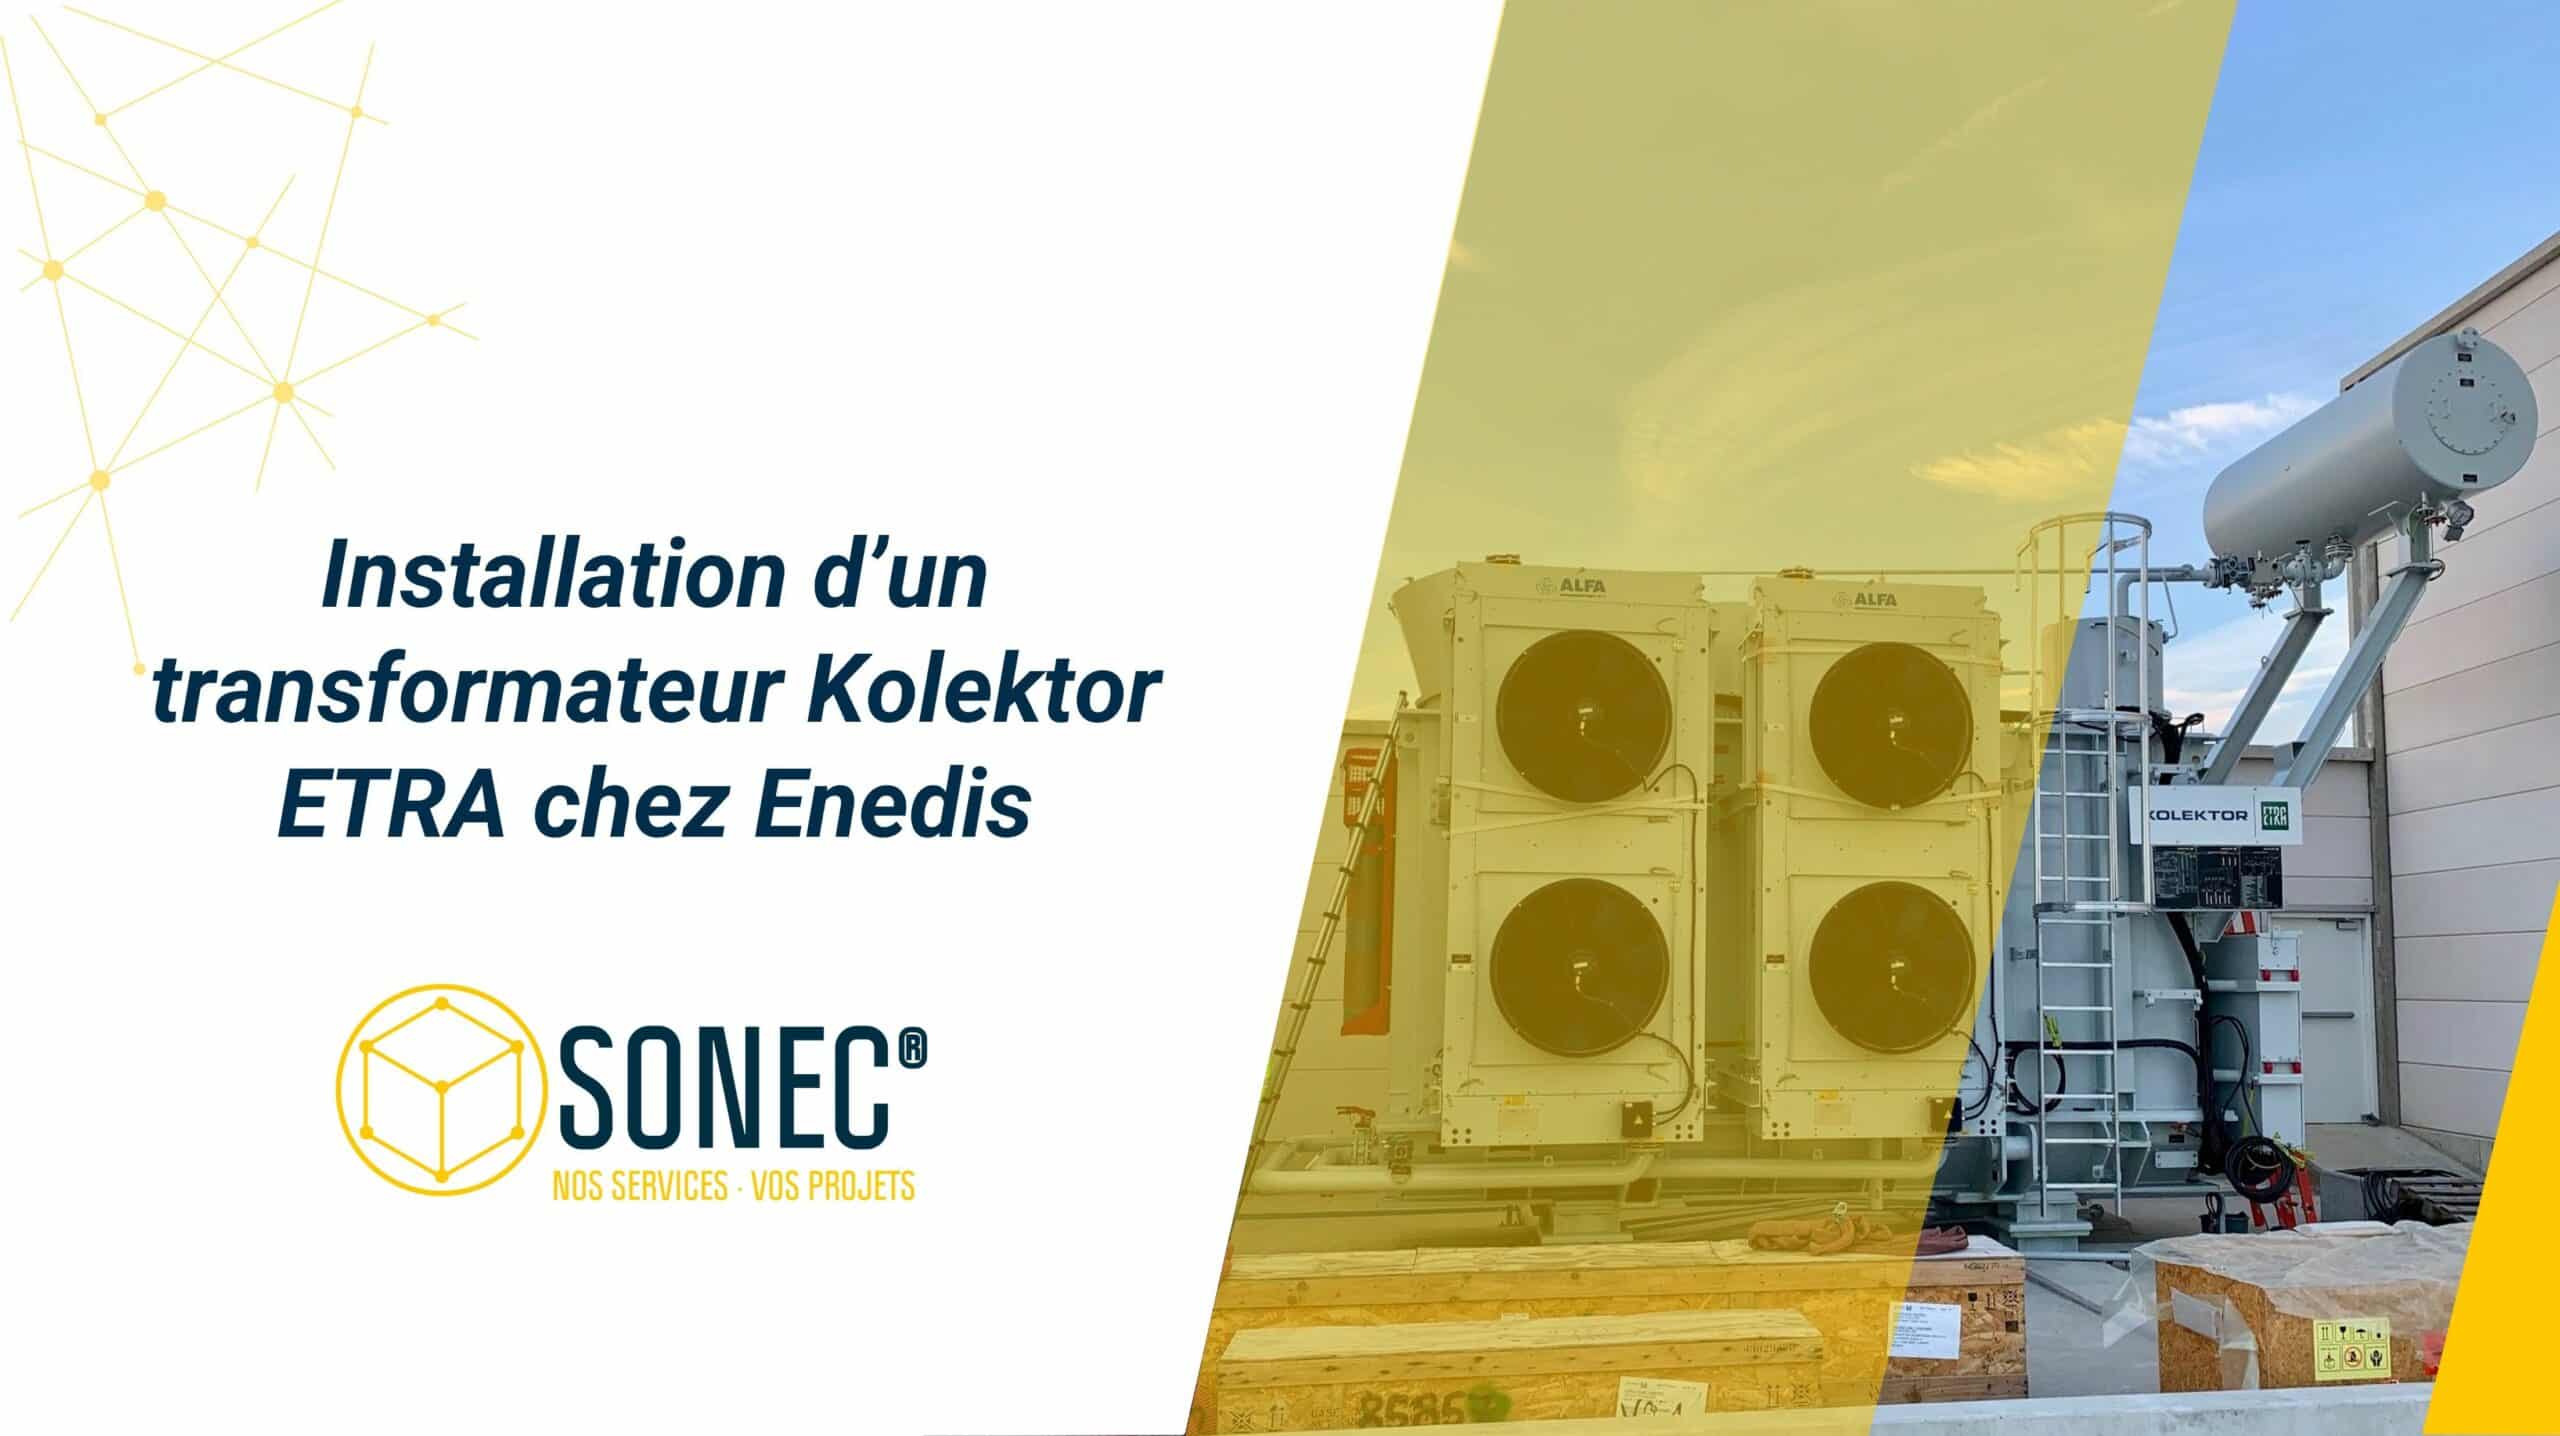 Installation SONEC : Transformateur Kolektor ETRA chez Enedis